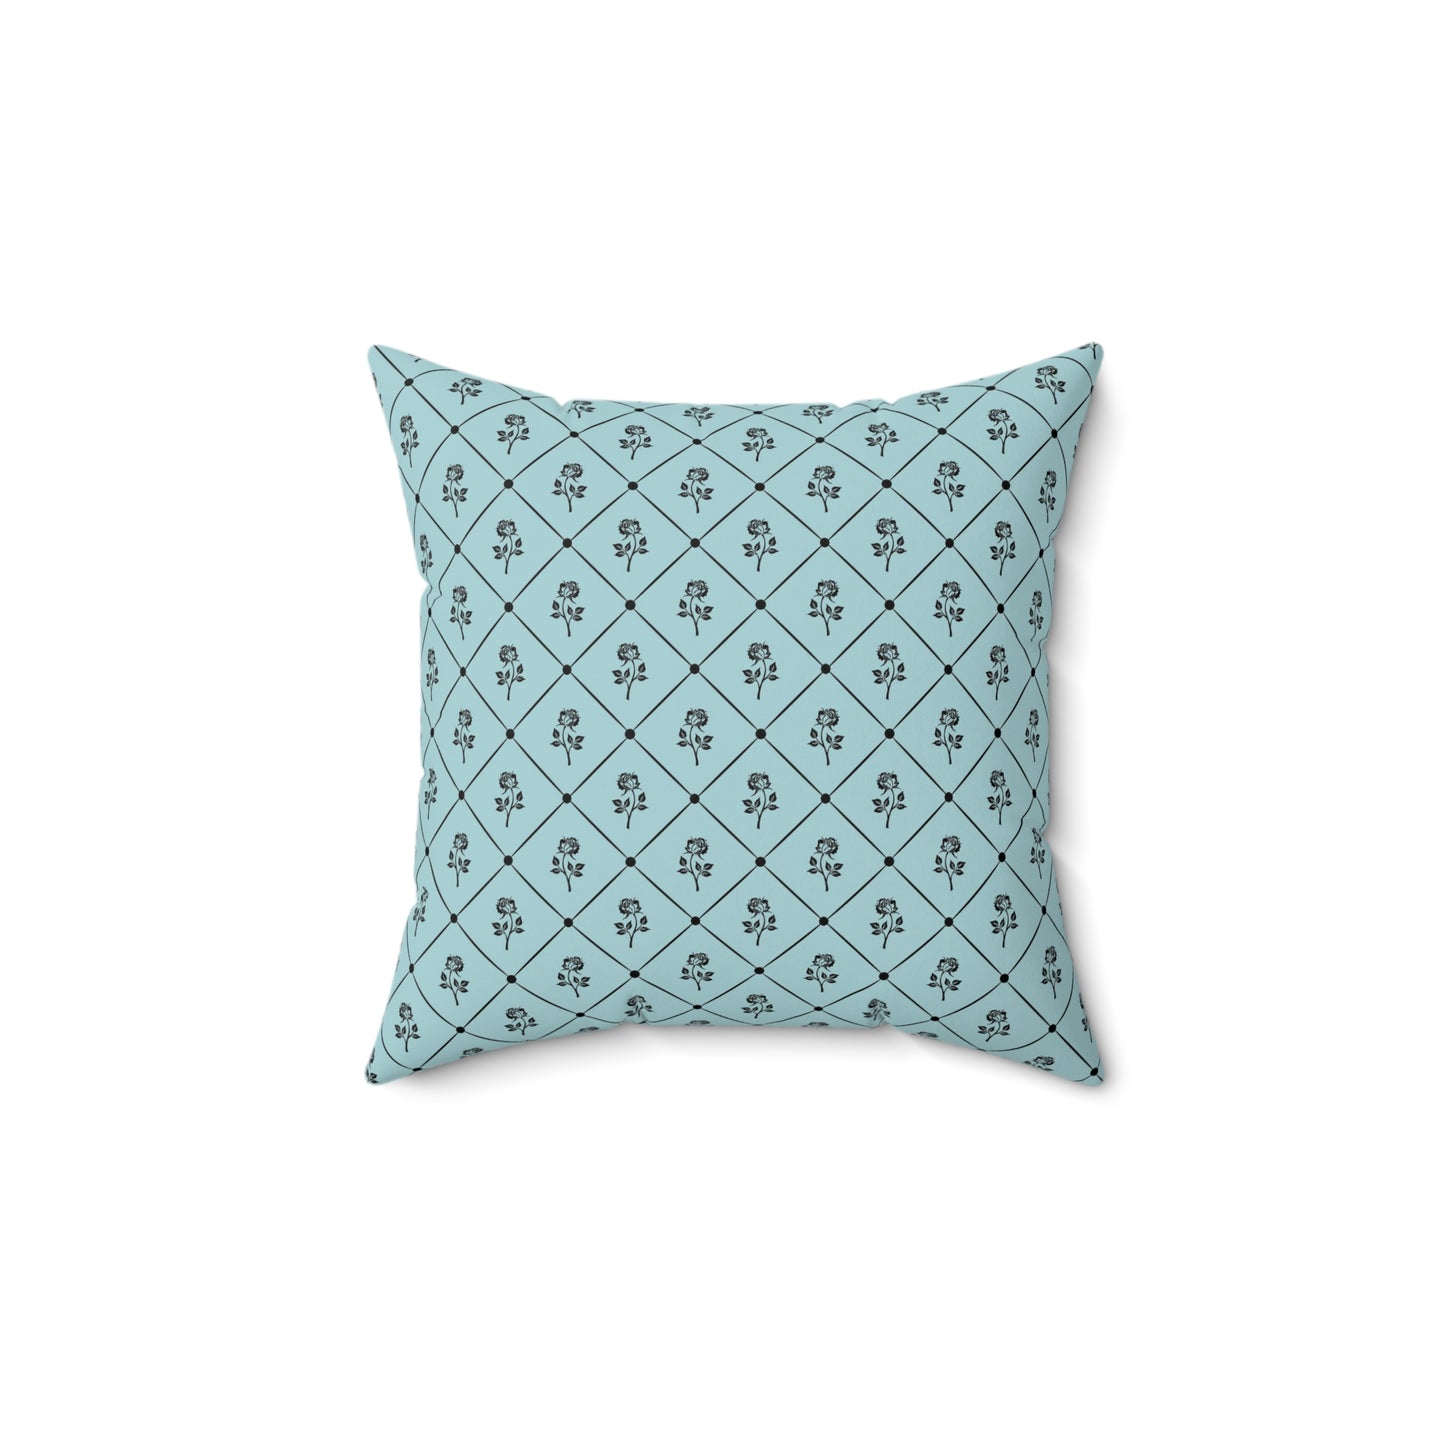 Teal Paris Pattern 14 - Faux Suede Square Pillow